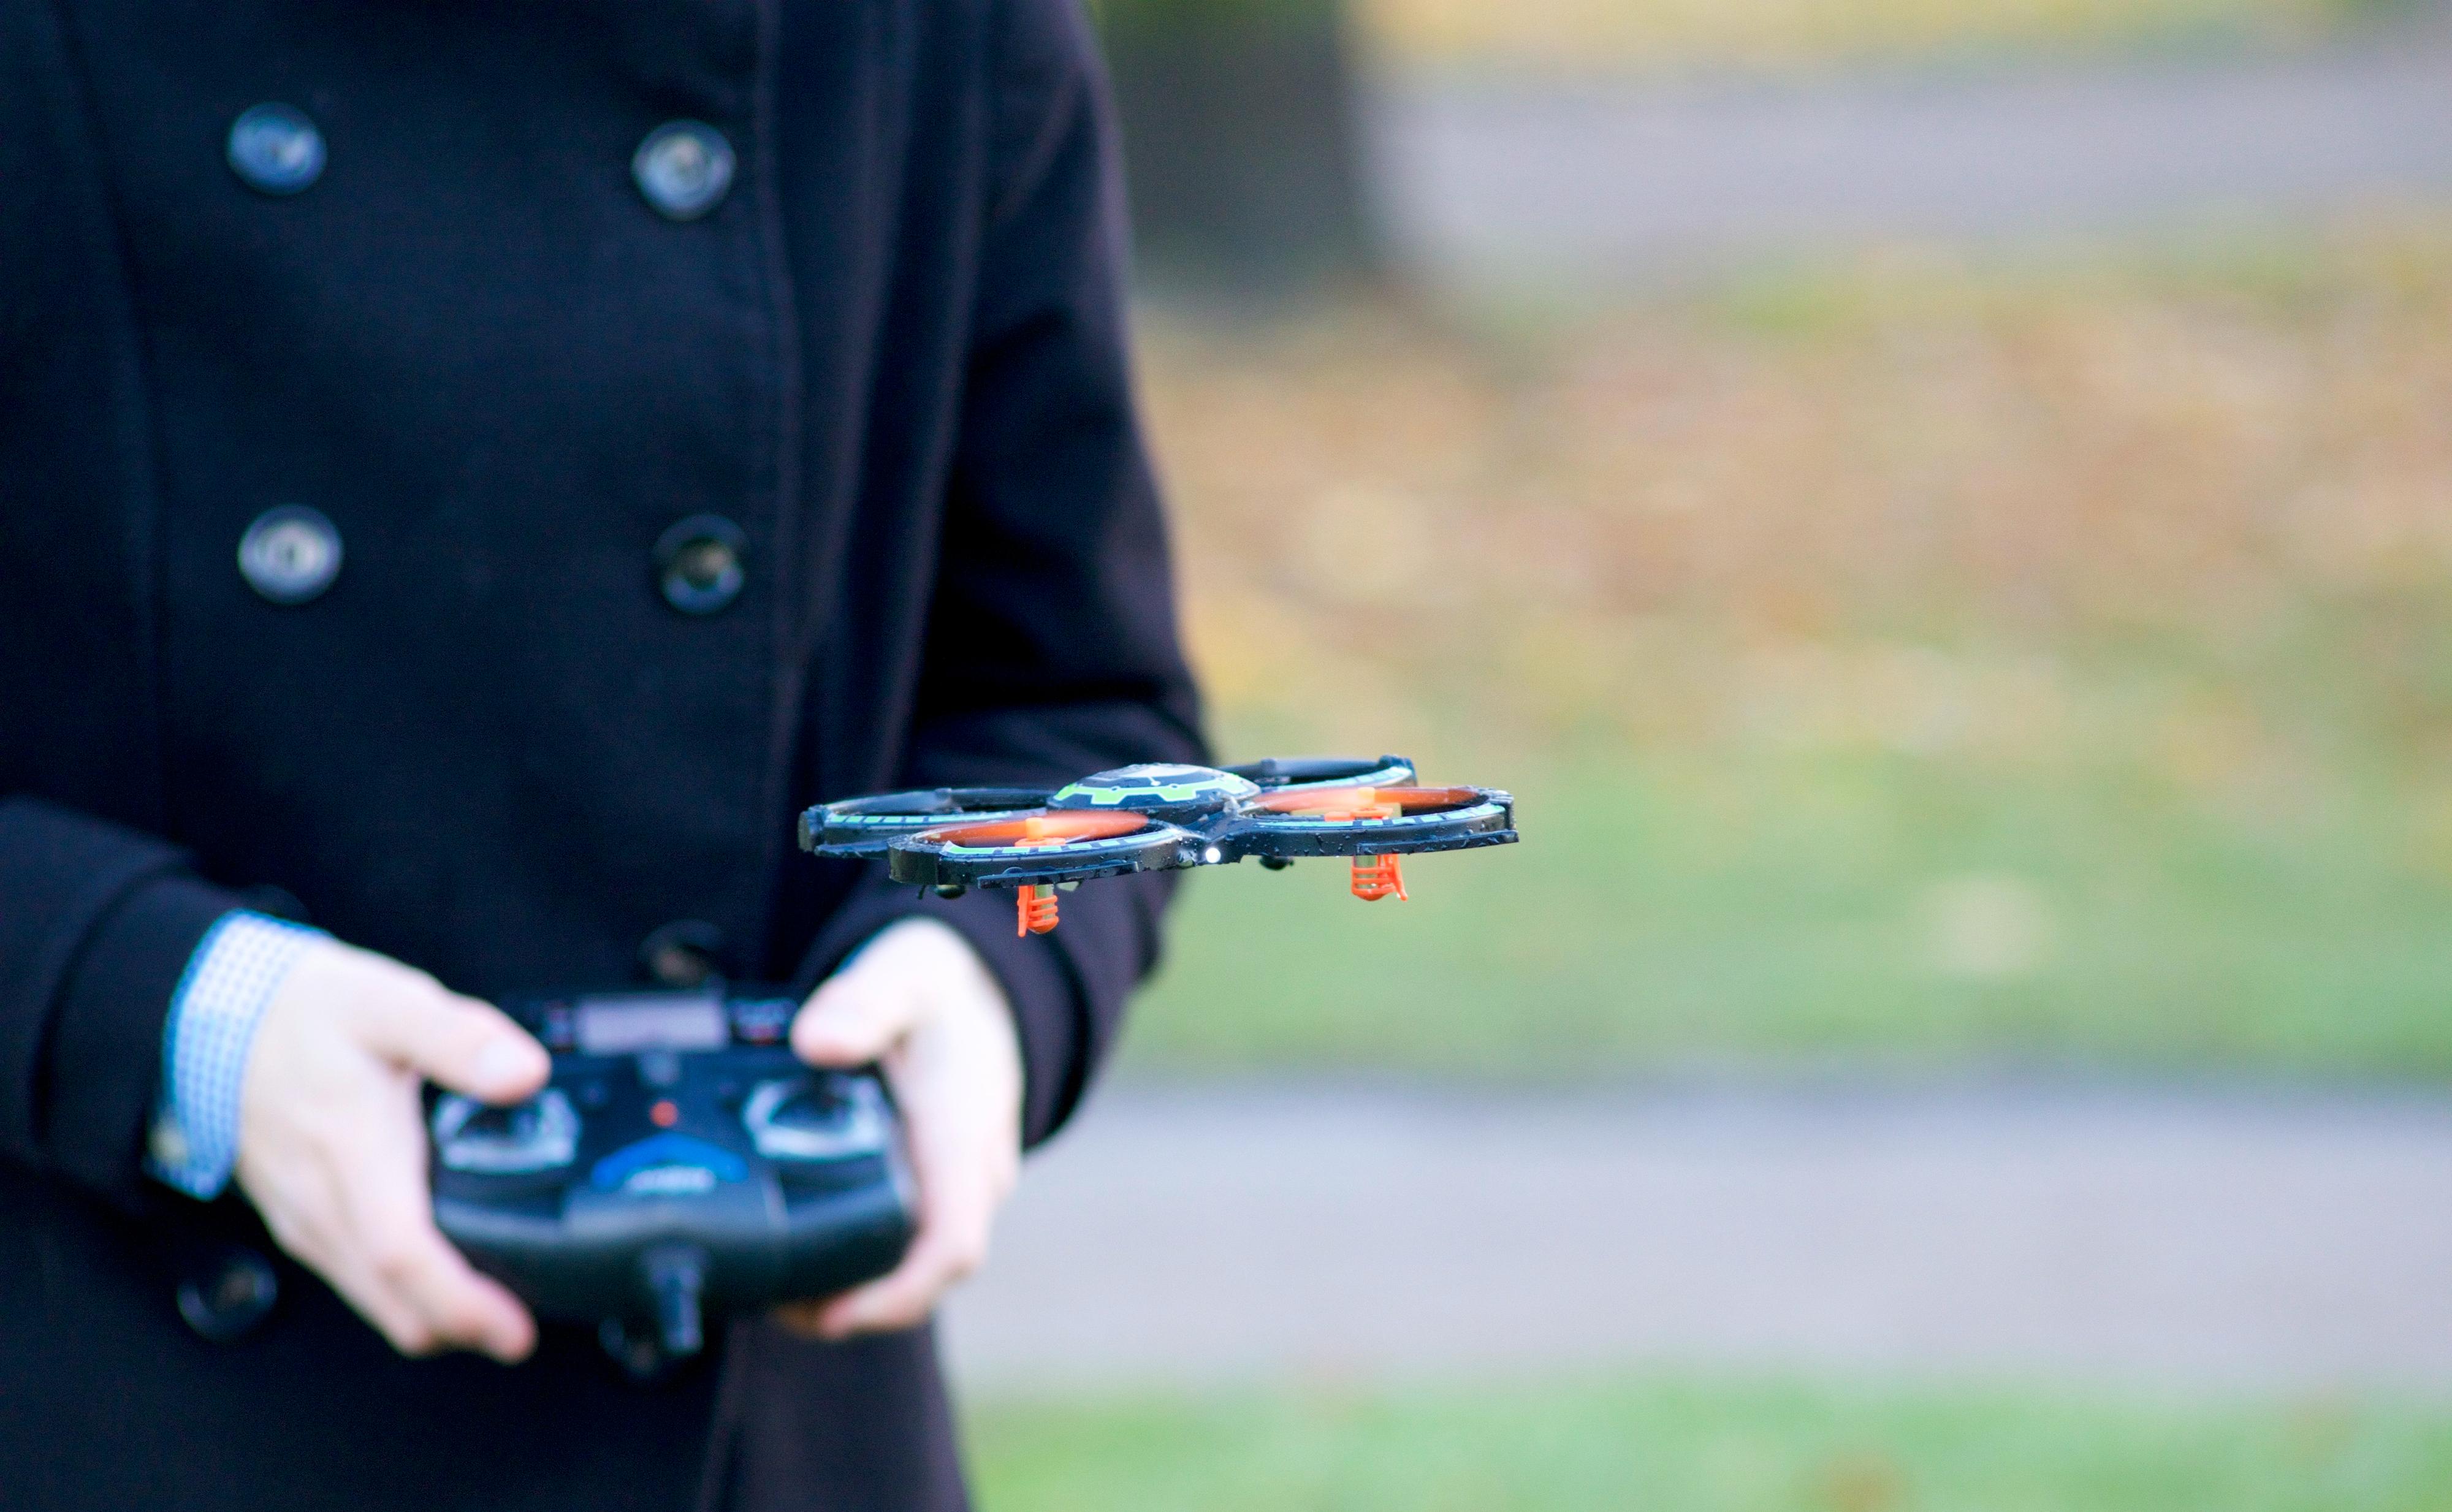 UDI Mini Drone er forholdsvis enkel å manøvrere. Foto: Erik Røseid, Tek.no